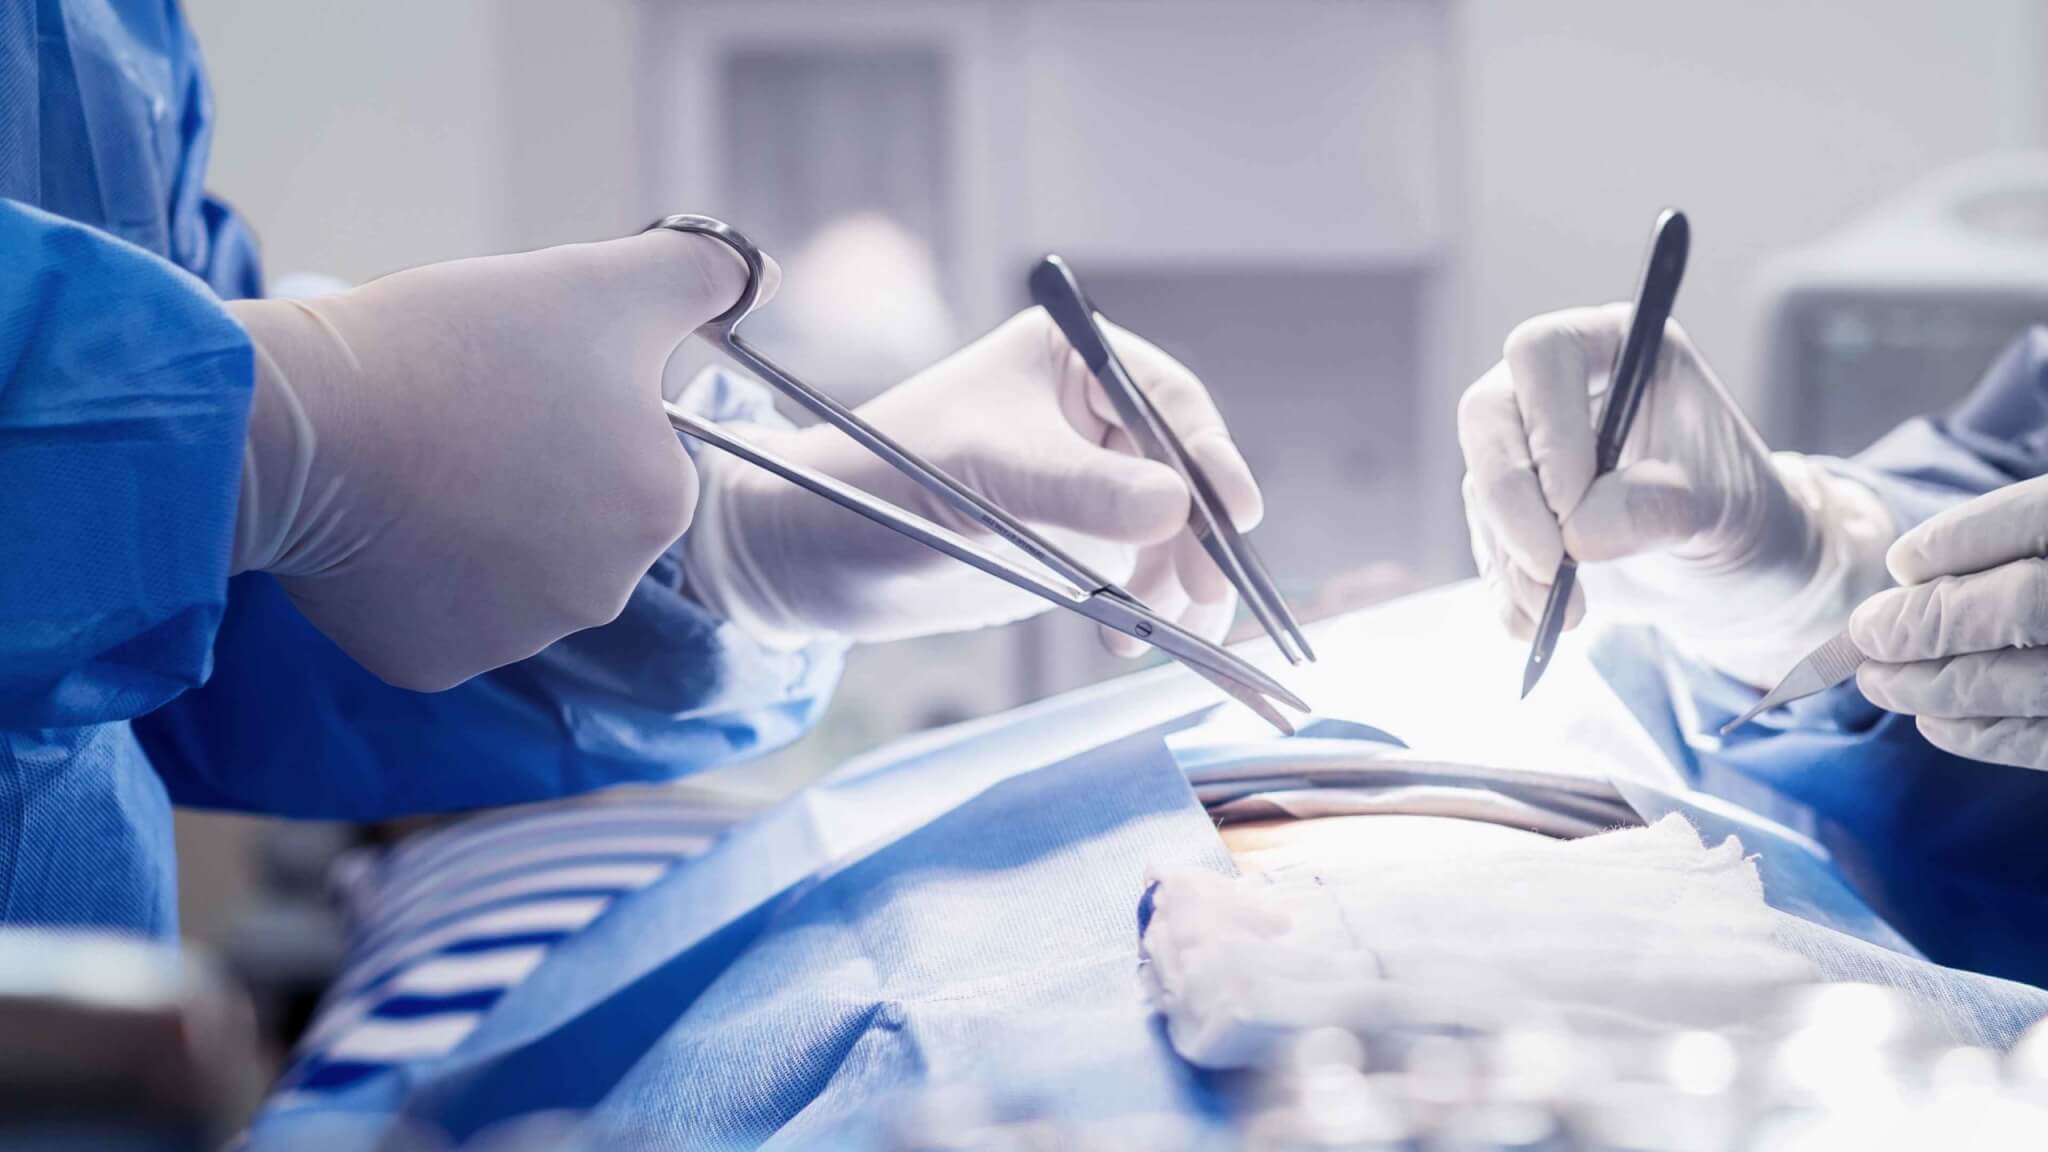 什么是手术室综合集成系统及其优点